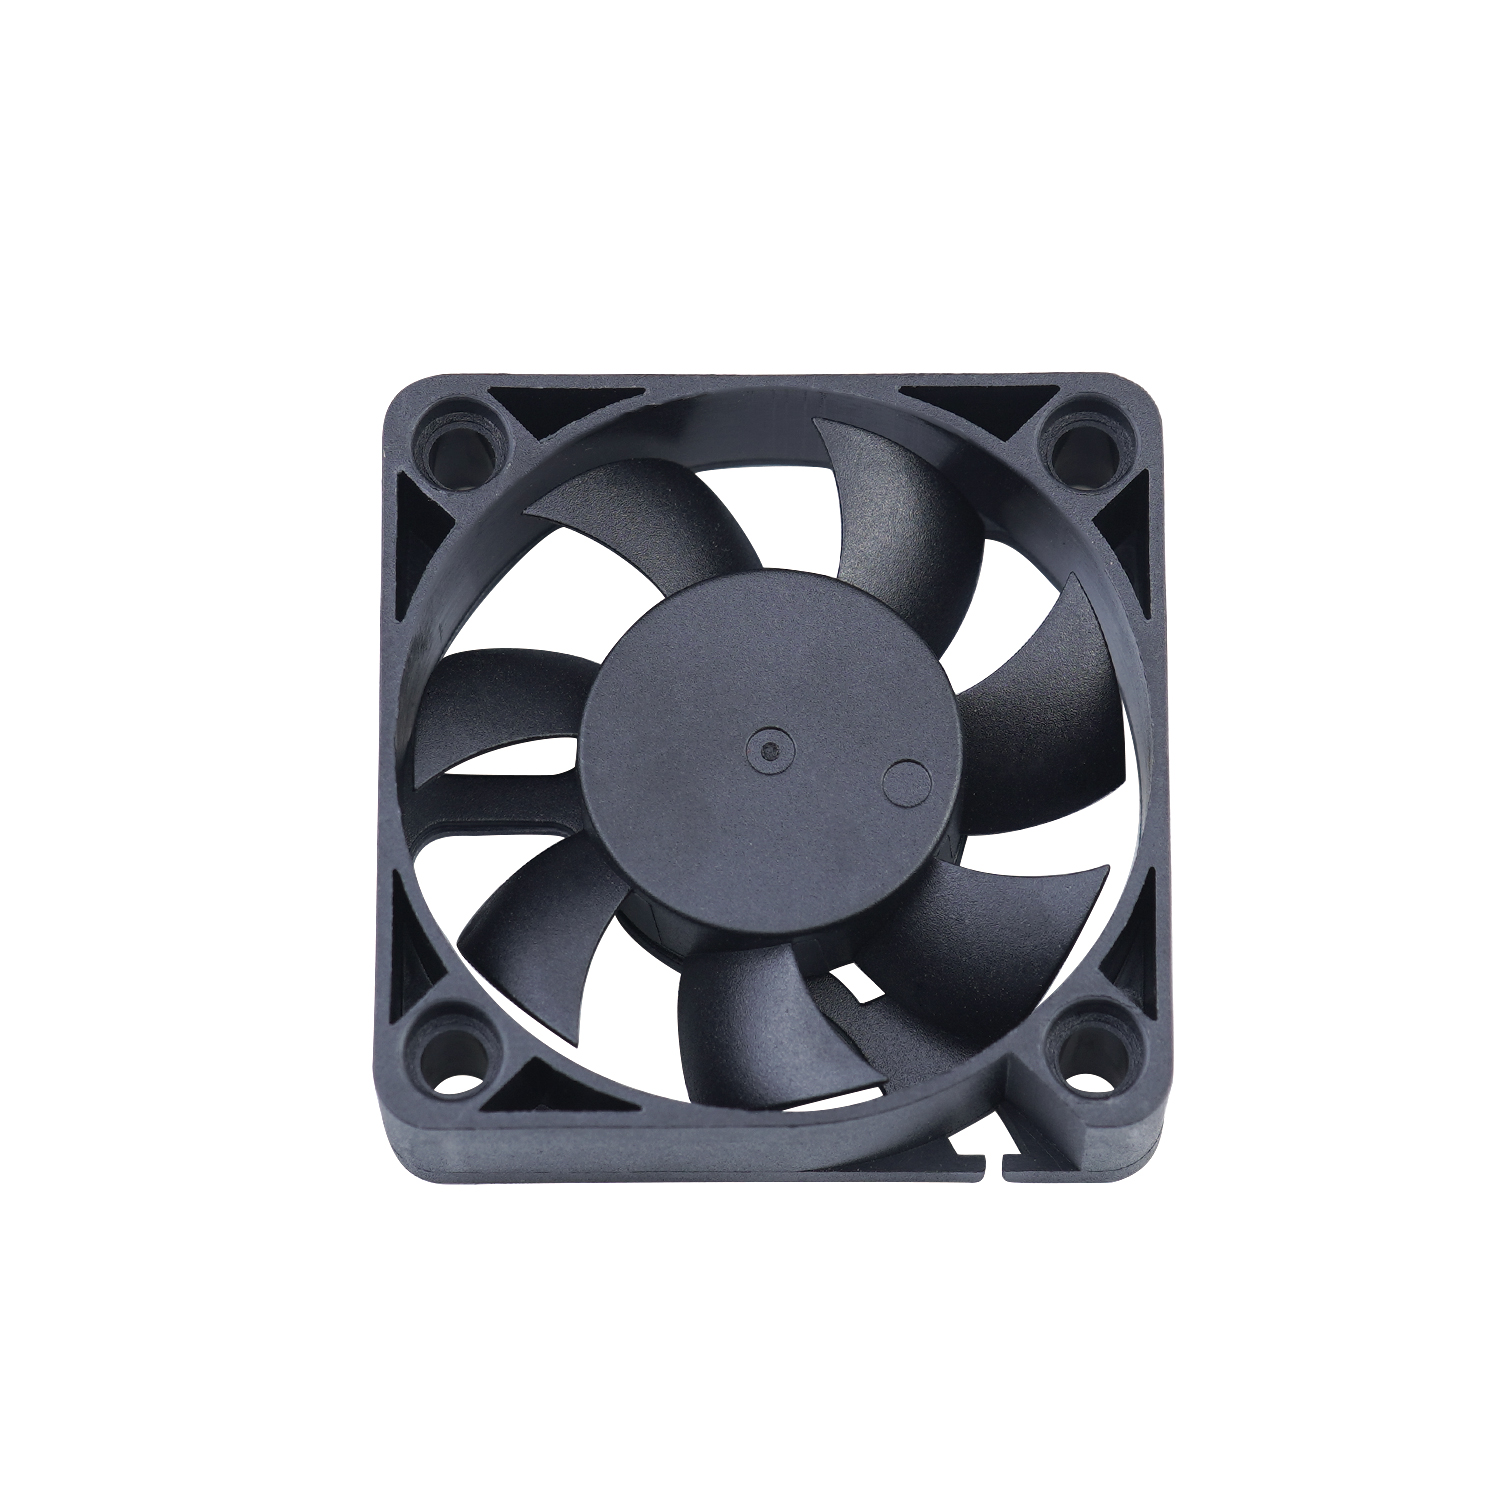 12 volt dc fan speed control 4010 cooling fan 